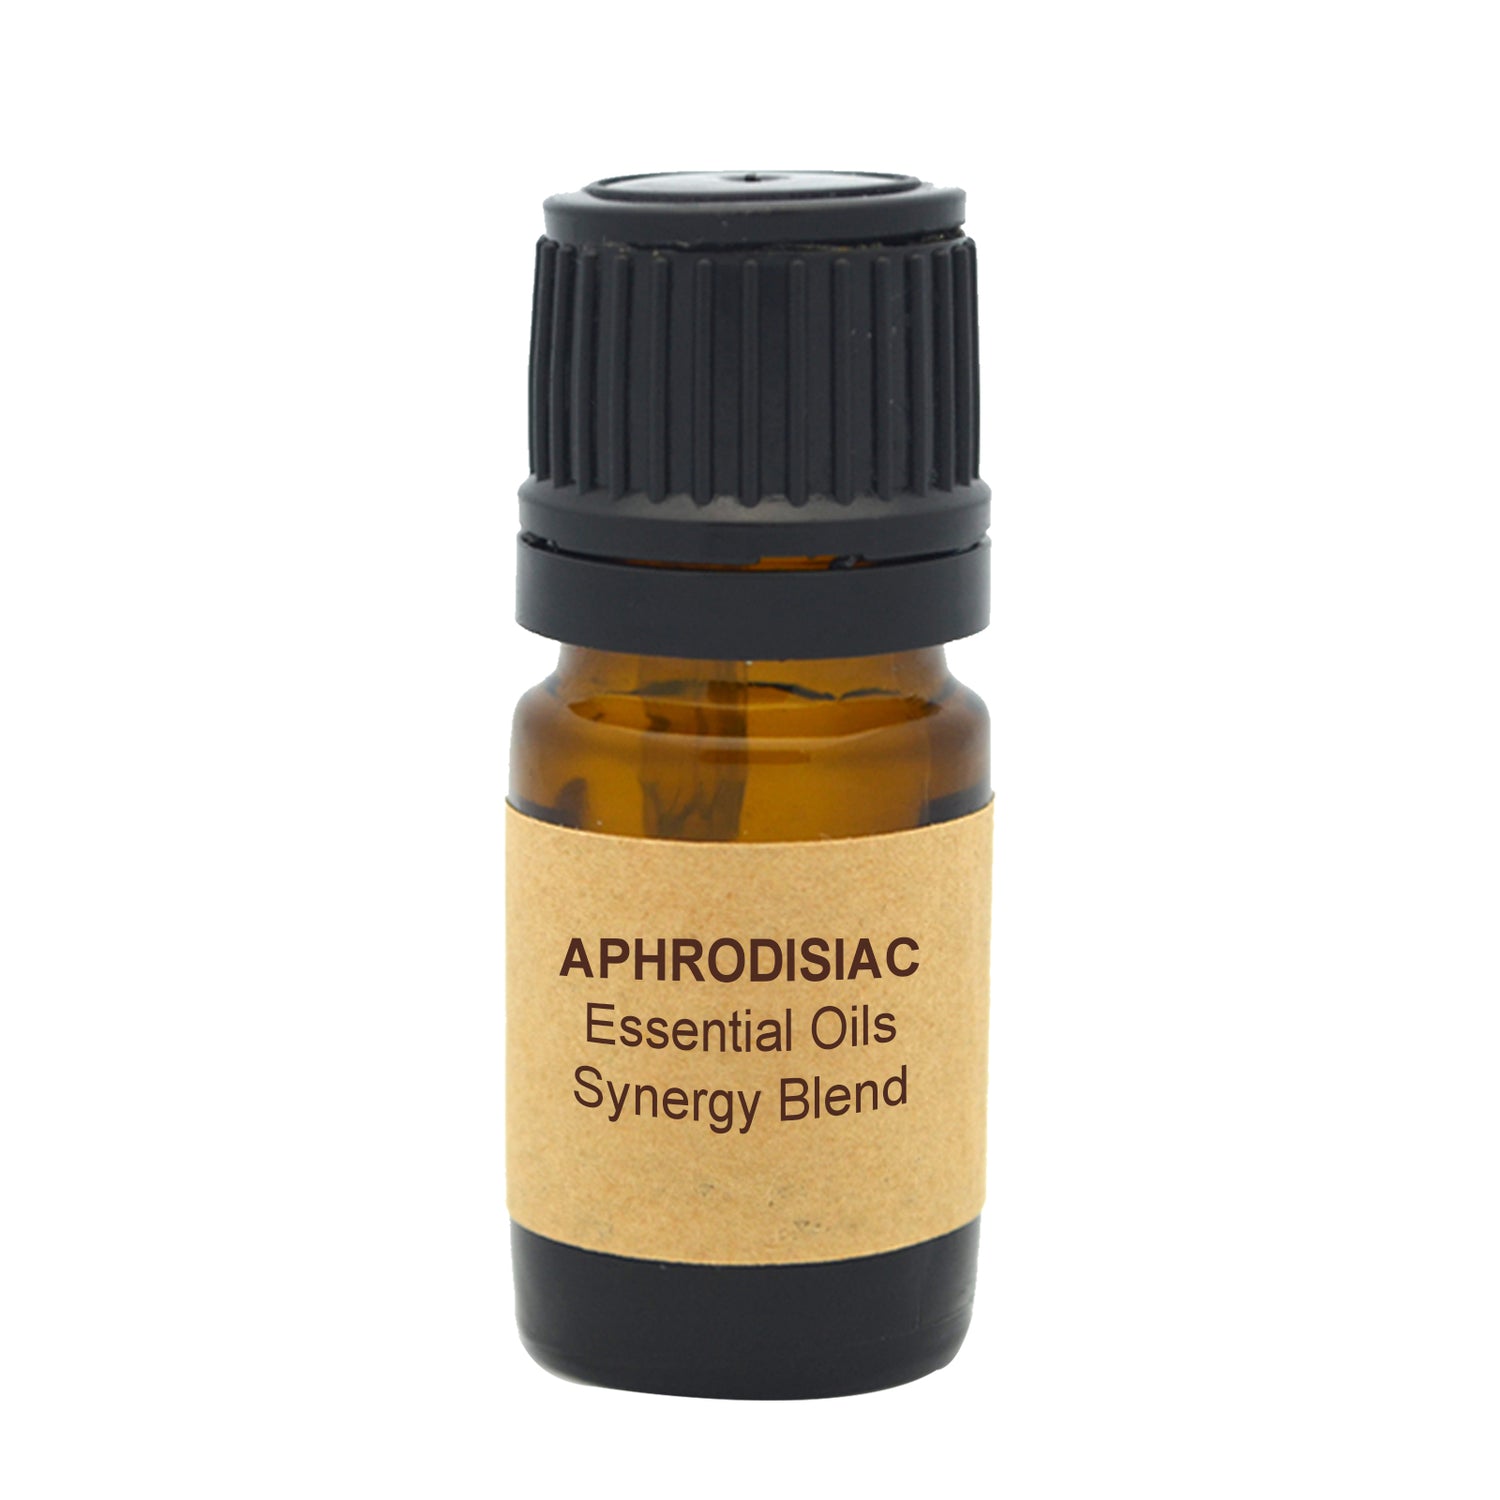 Aphrodisiac Essential Oils Synergy Blend.